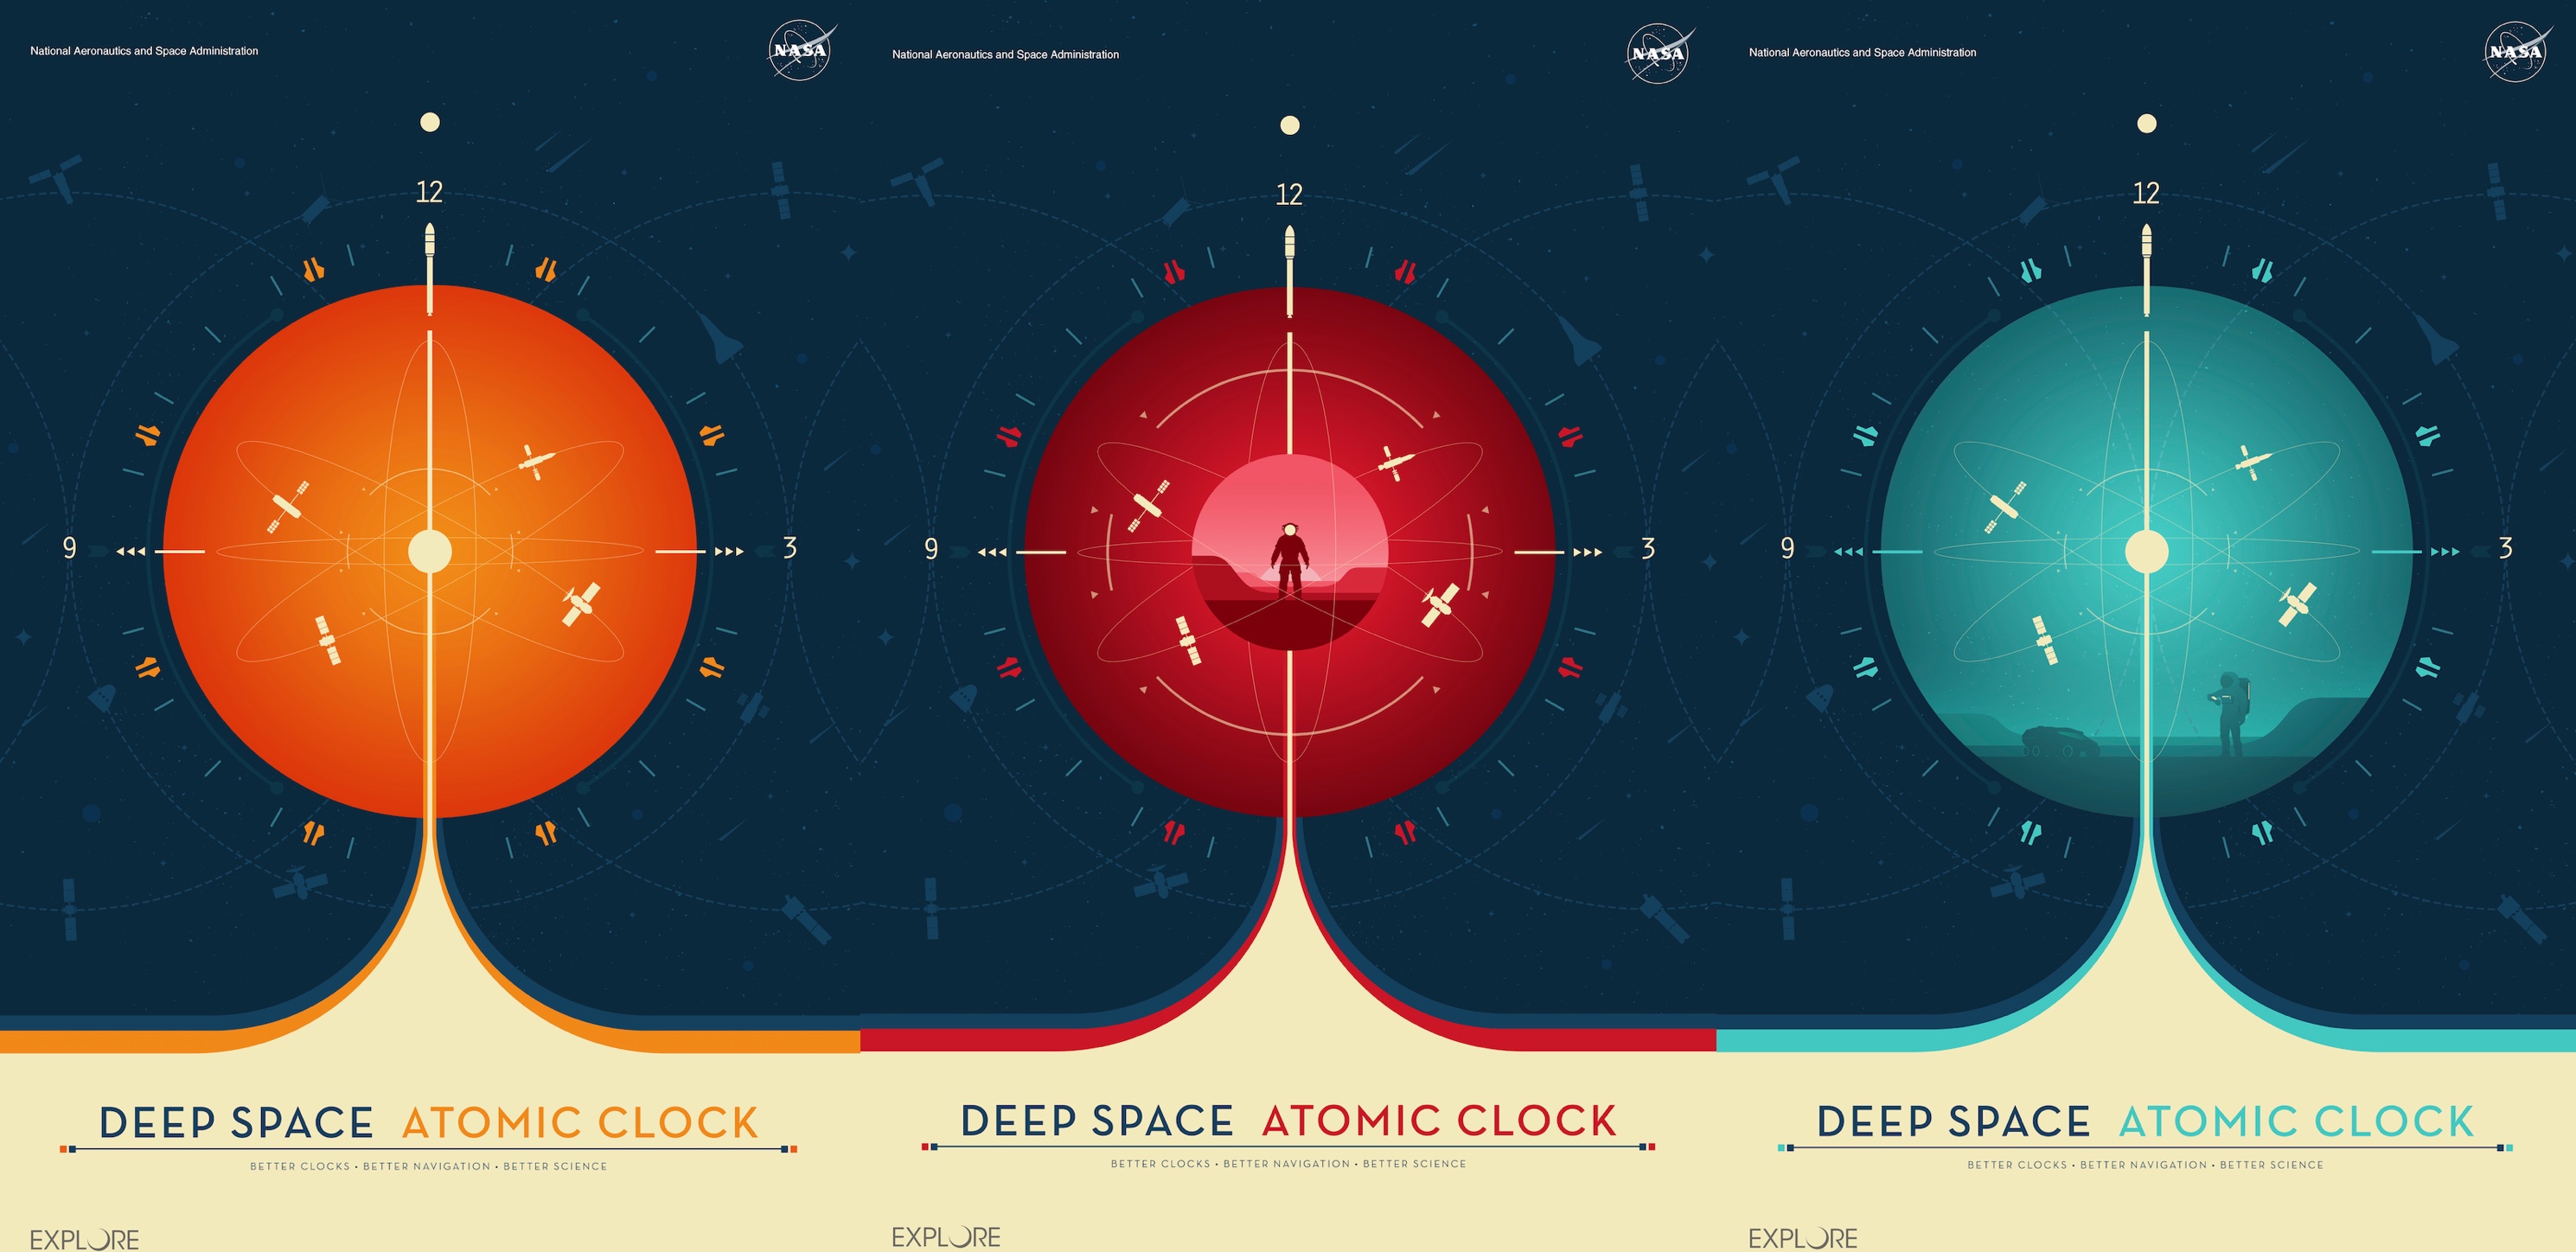 La Deep Space Atomic Clock est l’horloge atomique spatiale la plus précise jamais lancée. © Jet Propulsion Laboratory